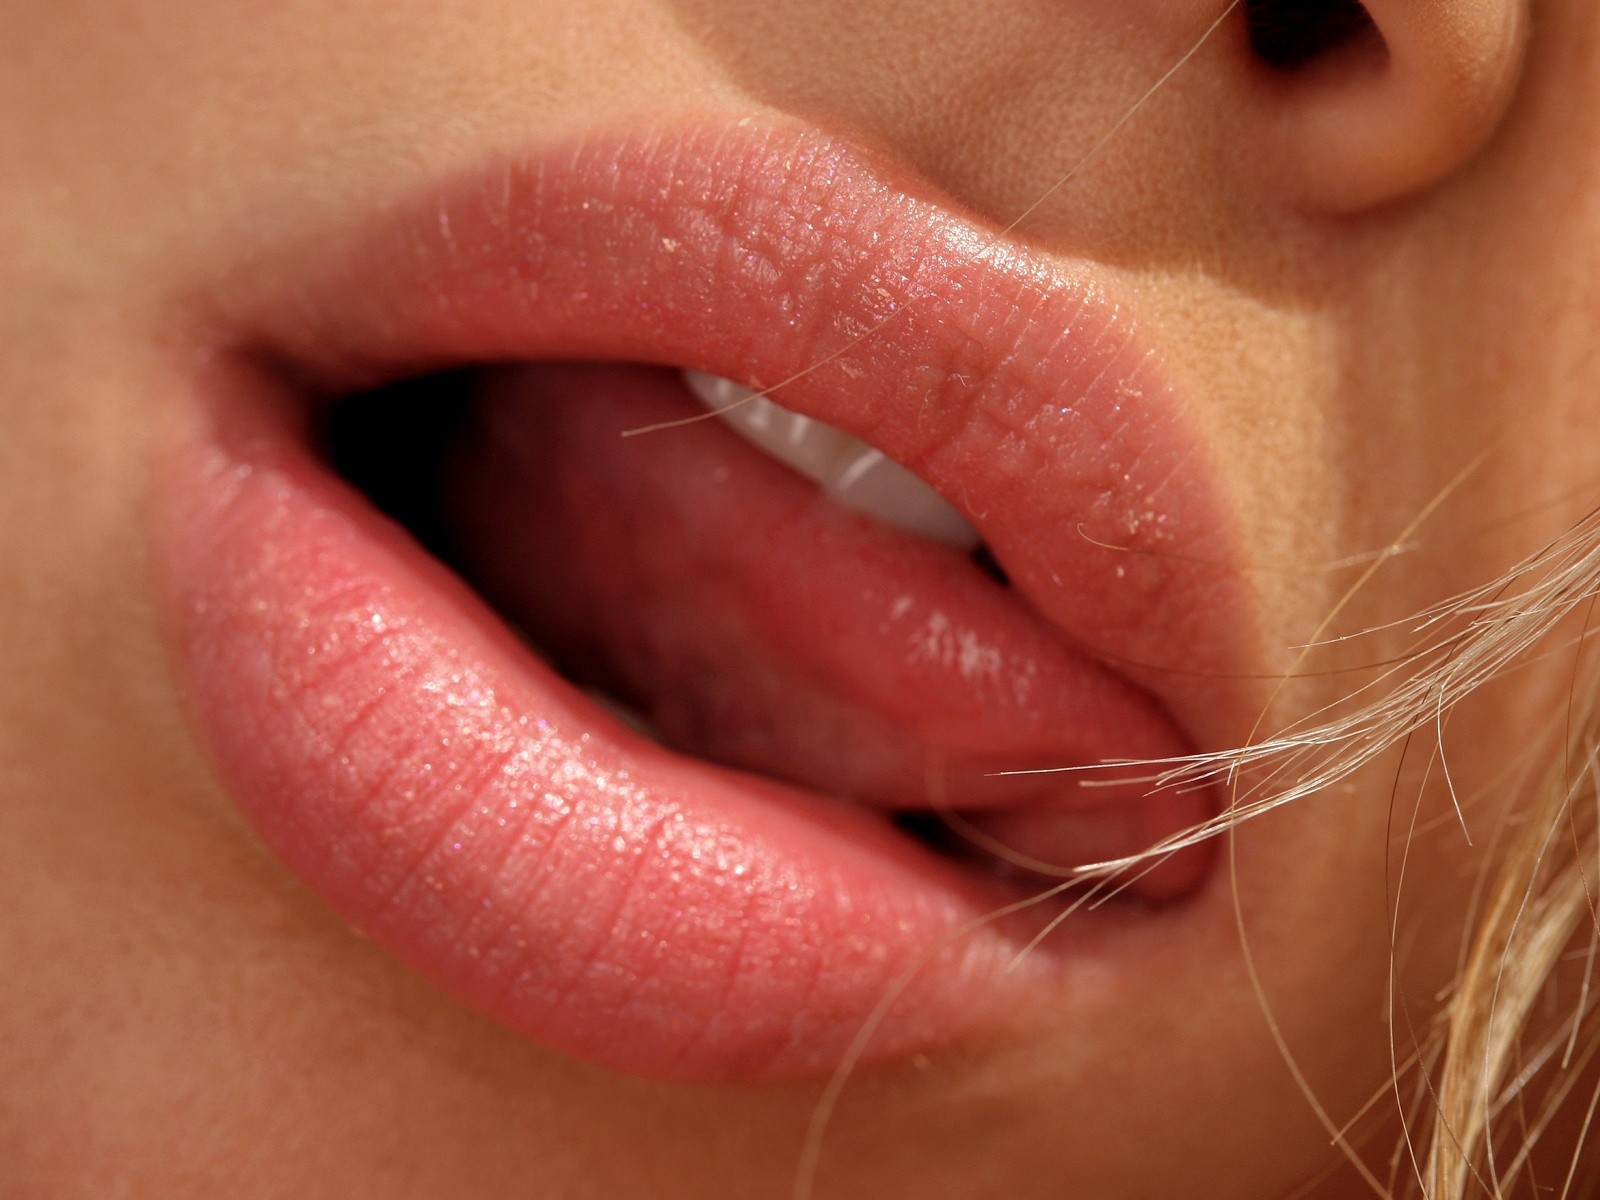  lips hot lips hot lips hot lips hot lips hot lips hot lips hot lips